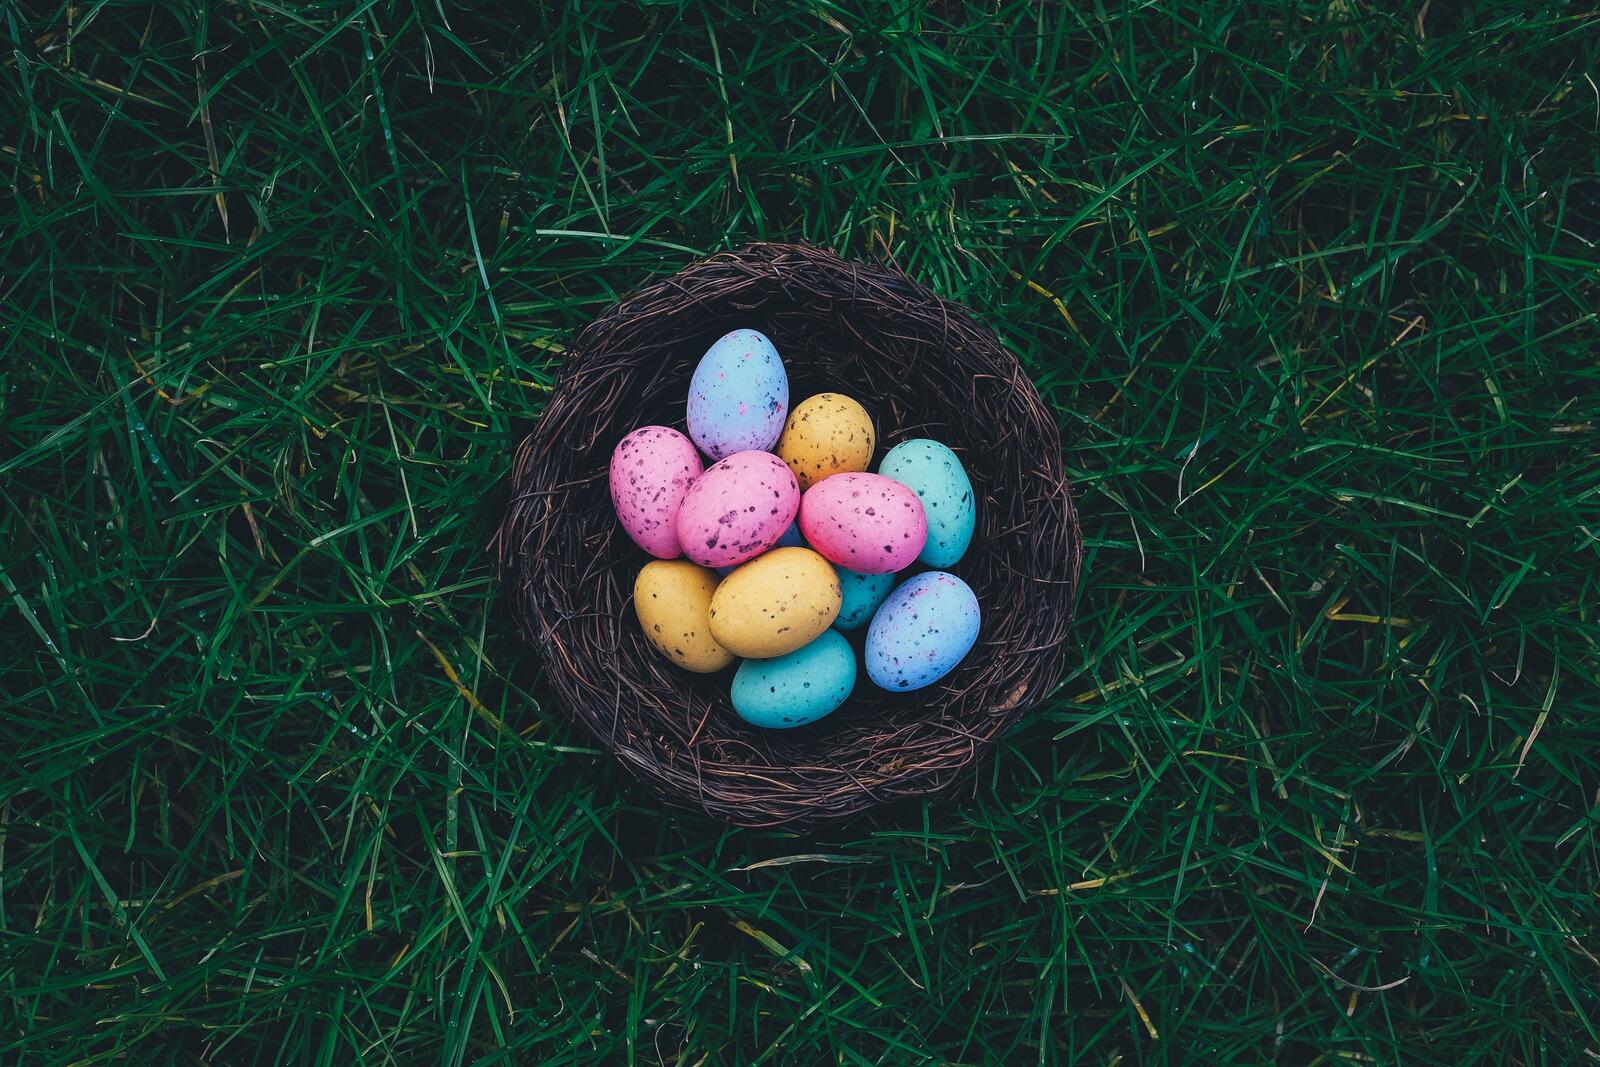 Бесплатное фото Пасхальные яйца в корзинке на траве